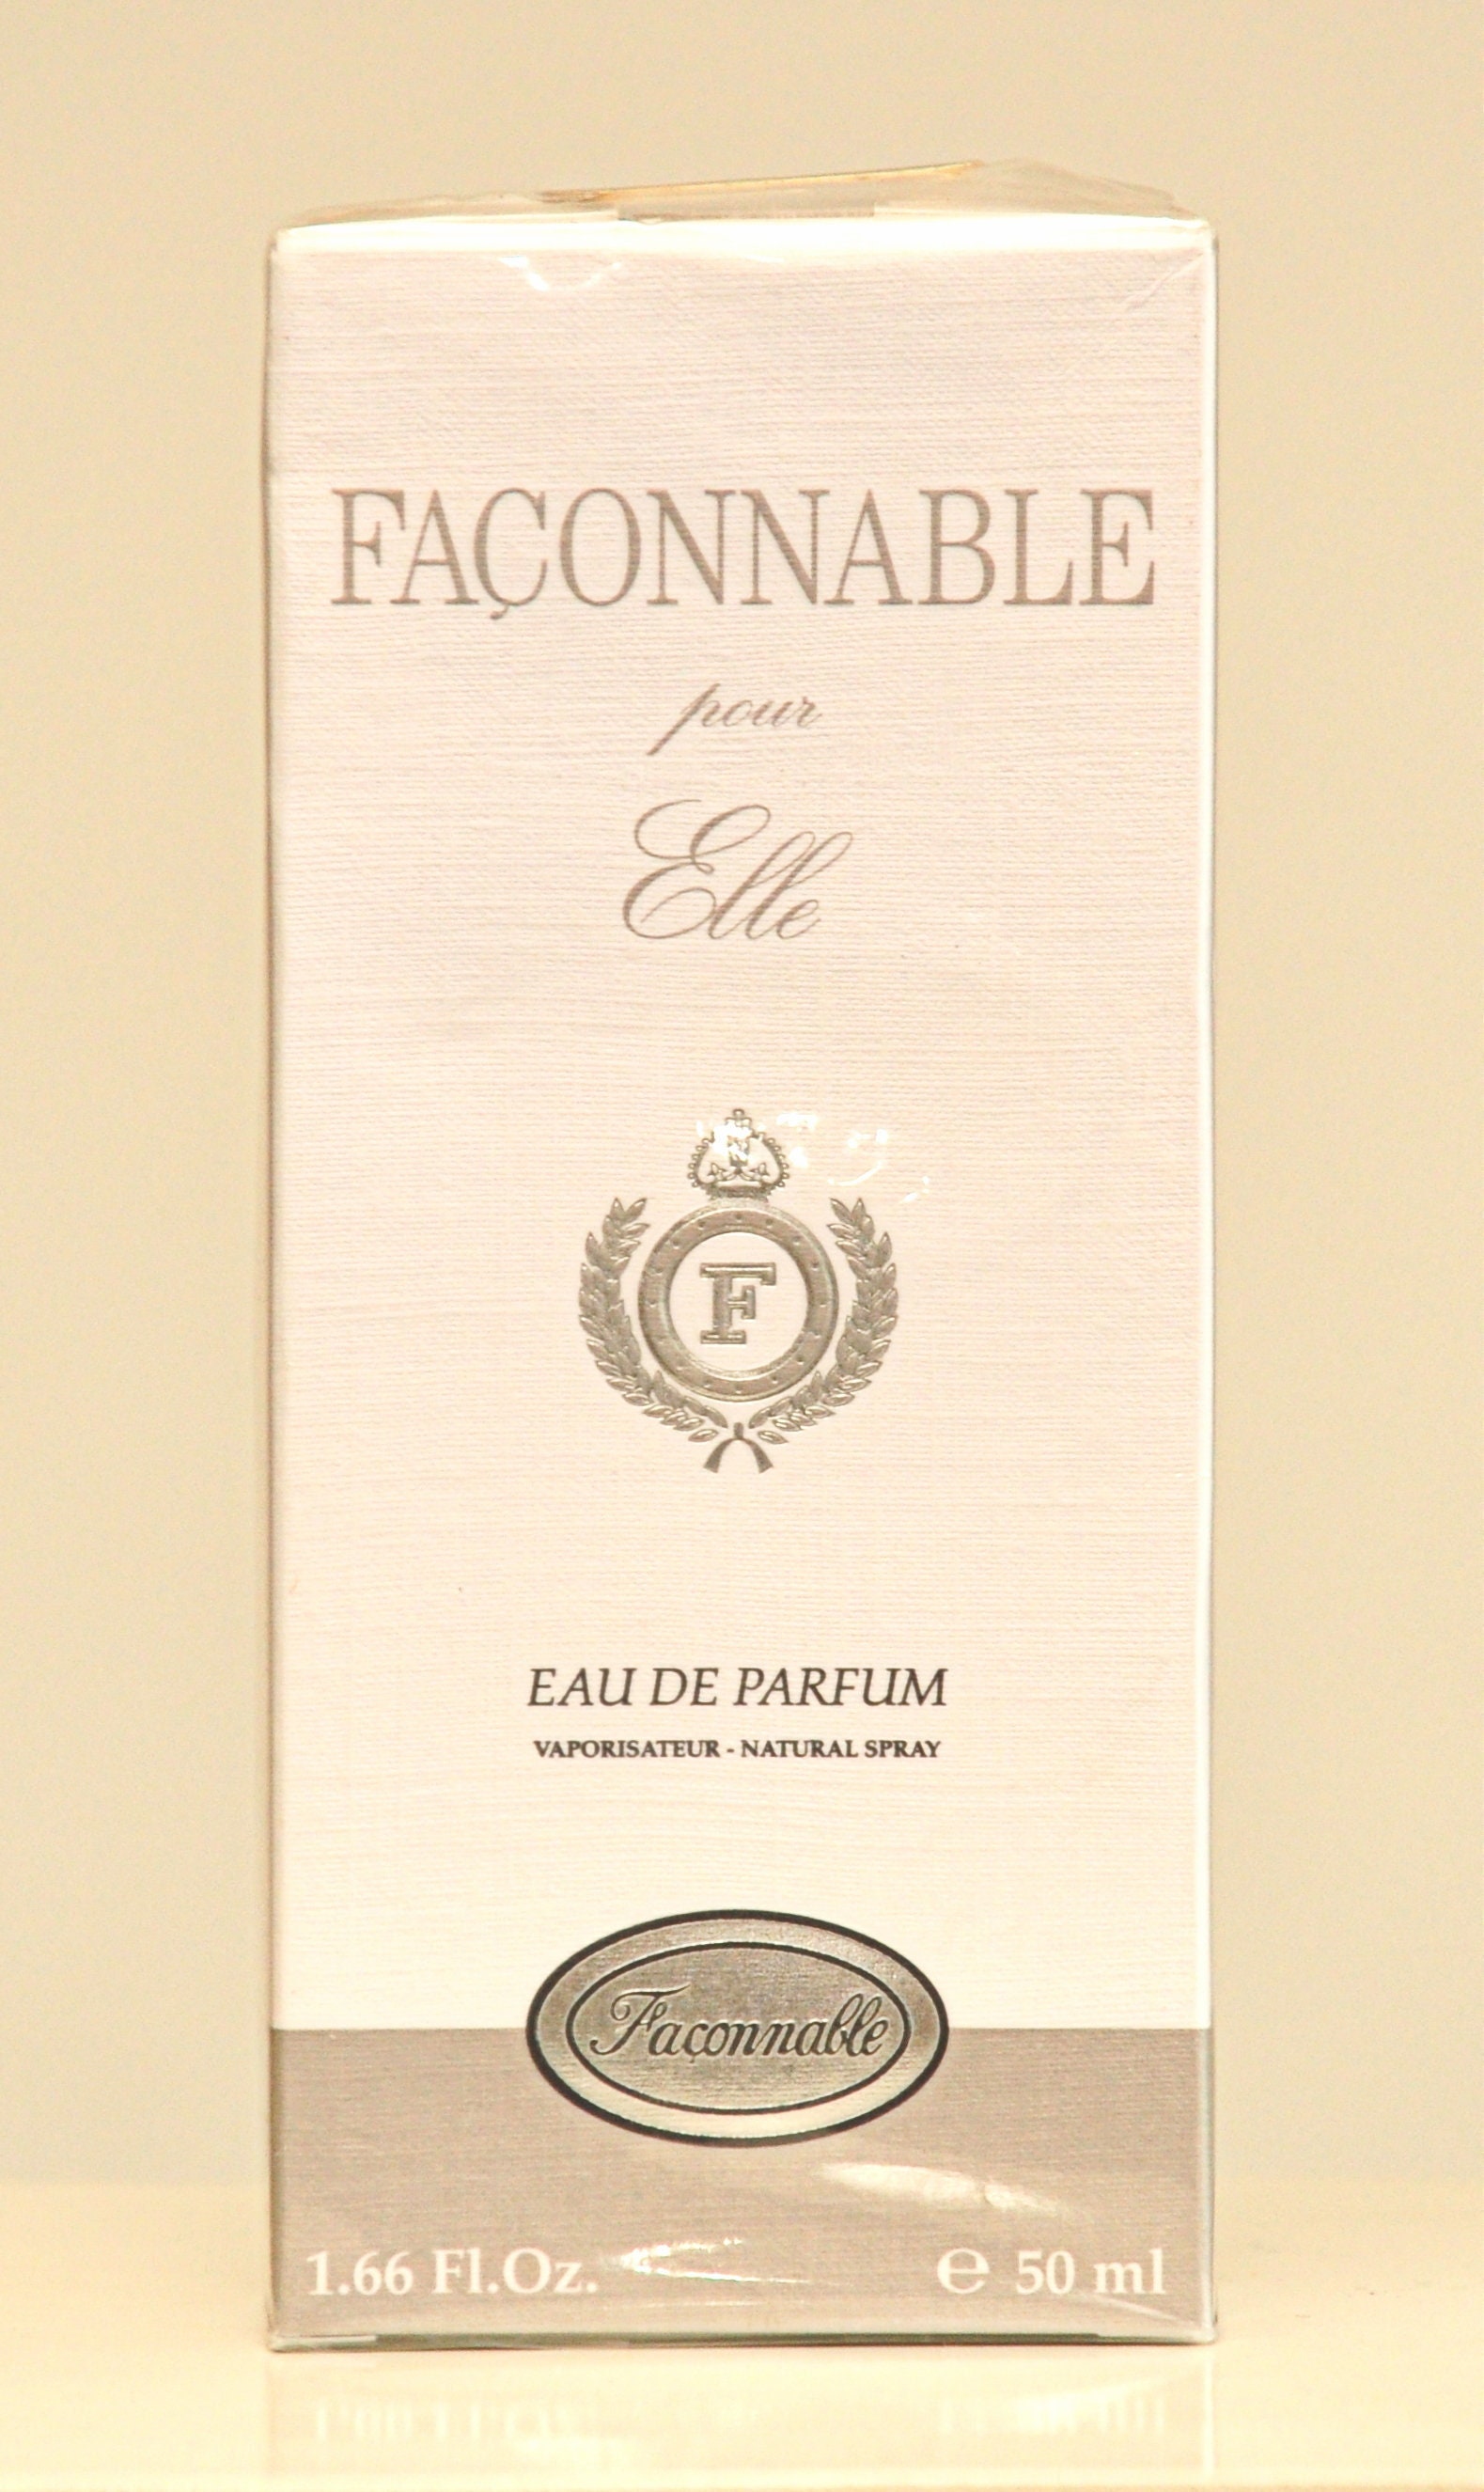 Faconnable Pour Elle Von Eau De Parfum Edp 50Ml Spray Parfüm Frau Rare Vintage 1996 New Sealed von Etsy - YourVintagePerfume